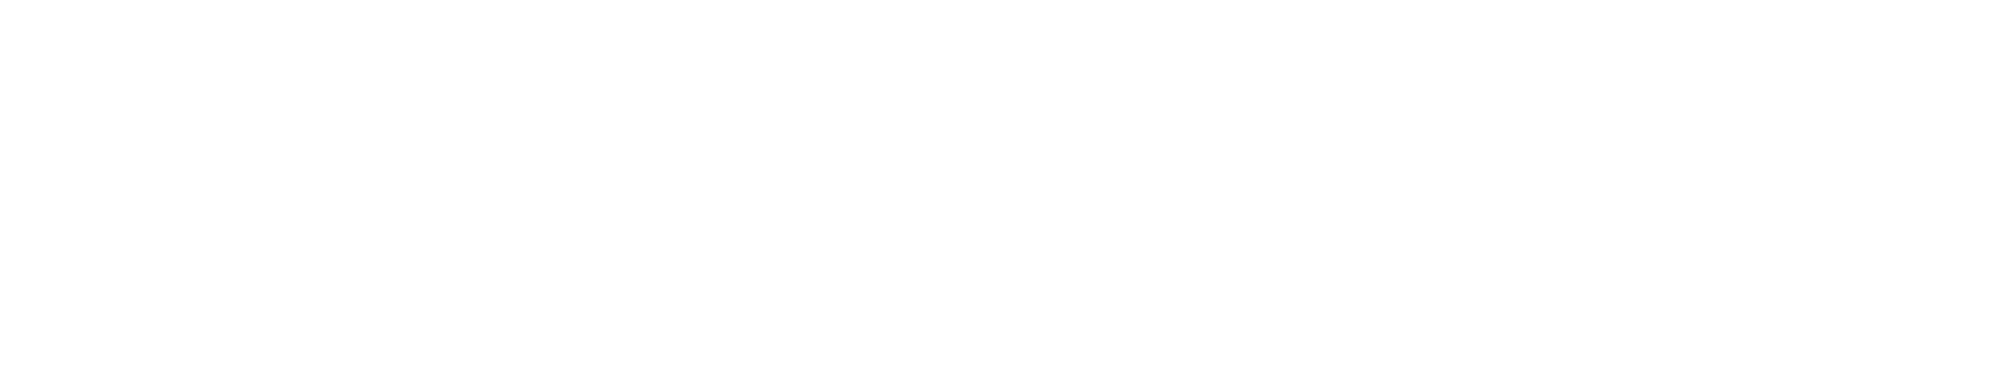 Morgan Wealth